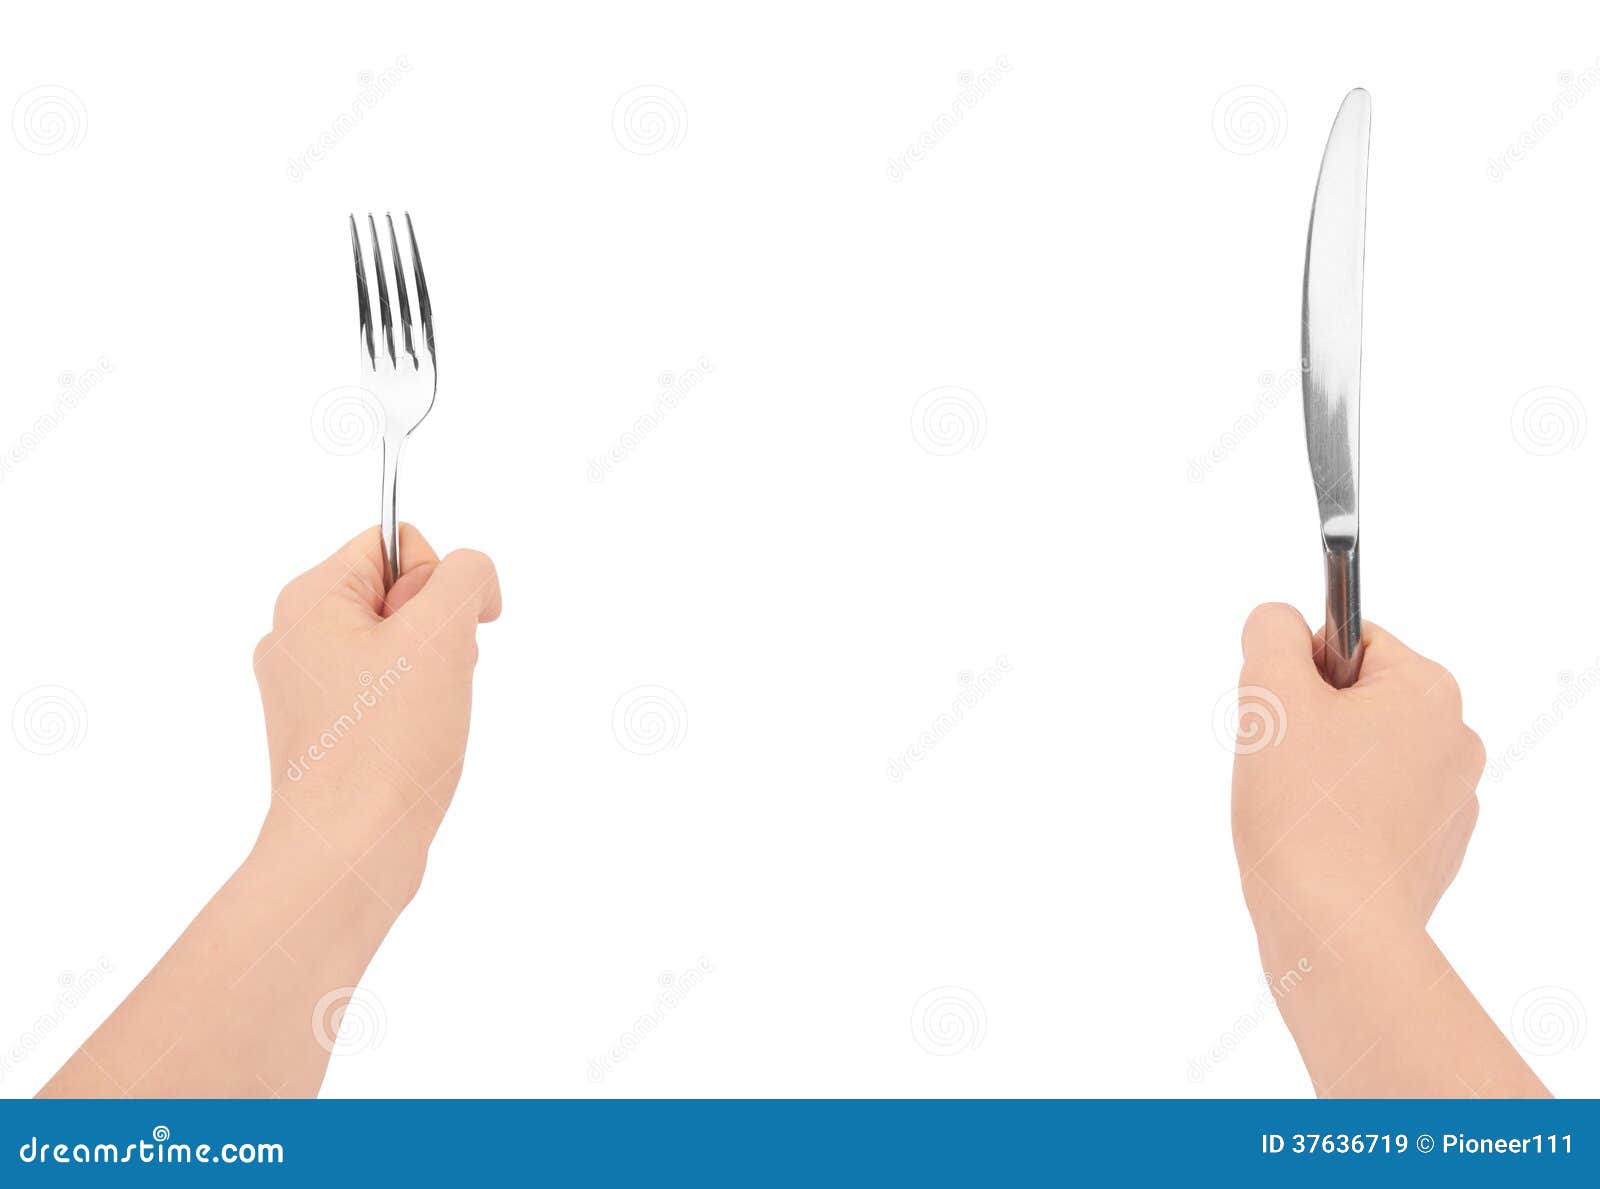 Ножик вилку или ложку не держите